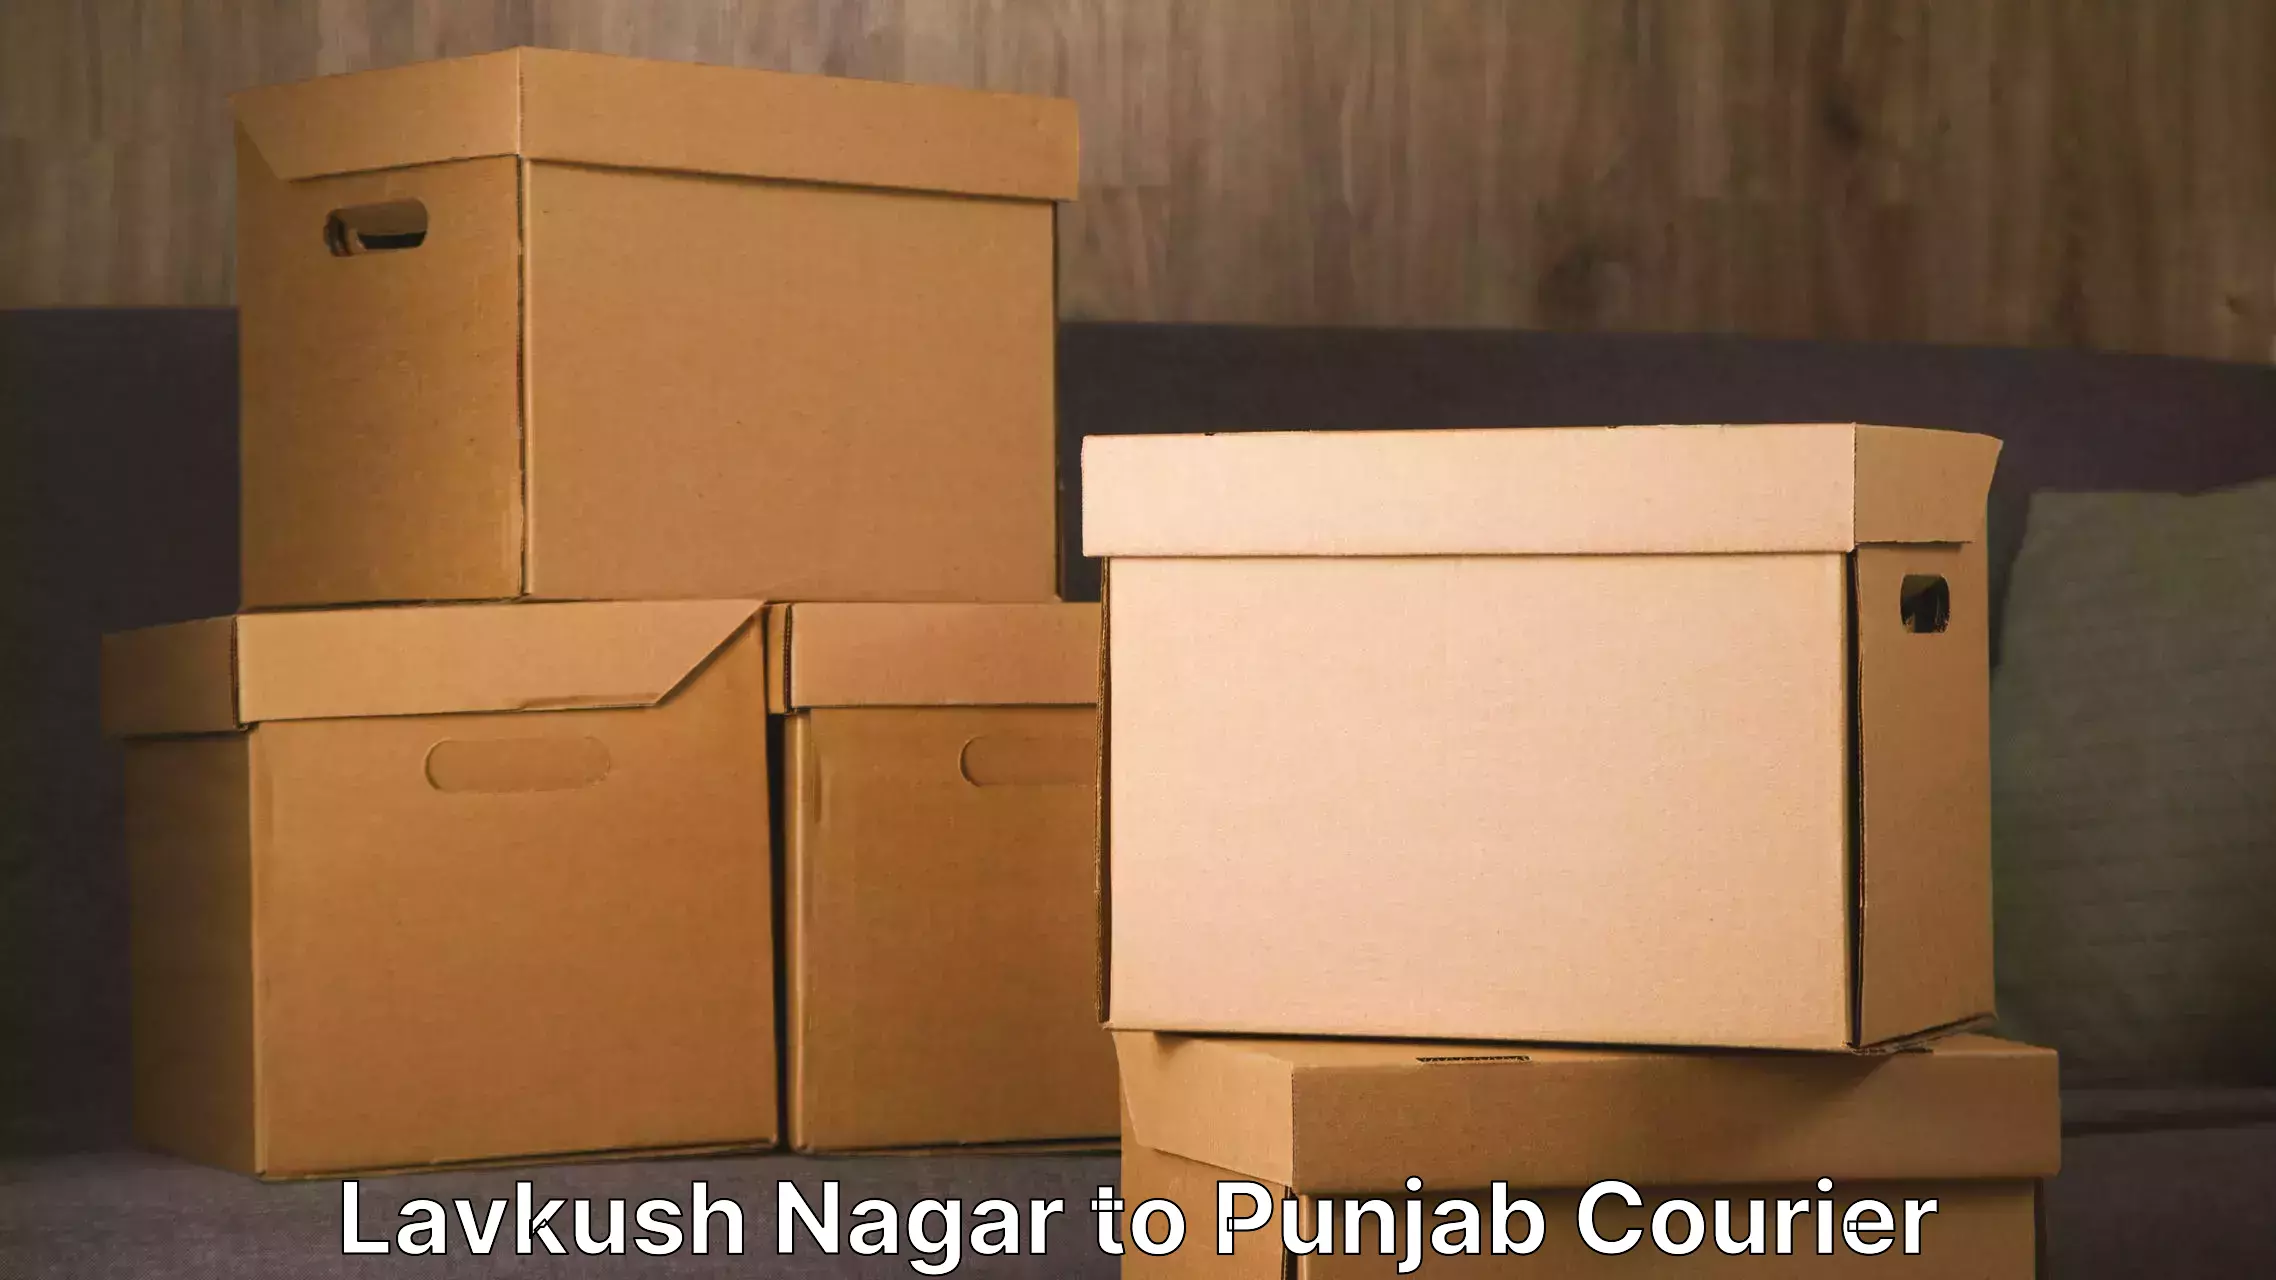 Furniture transport professionals Lavkush Nagar to Punjab